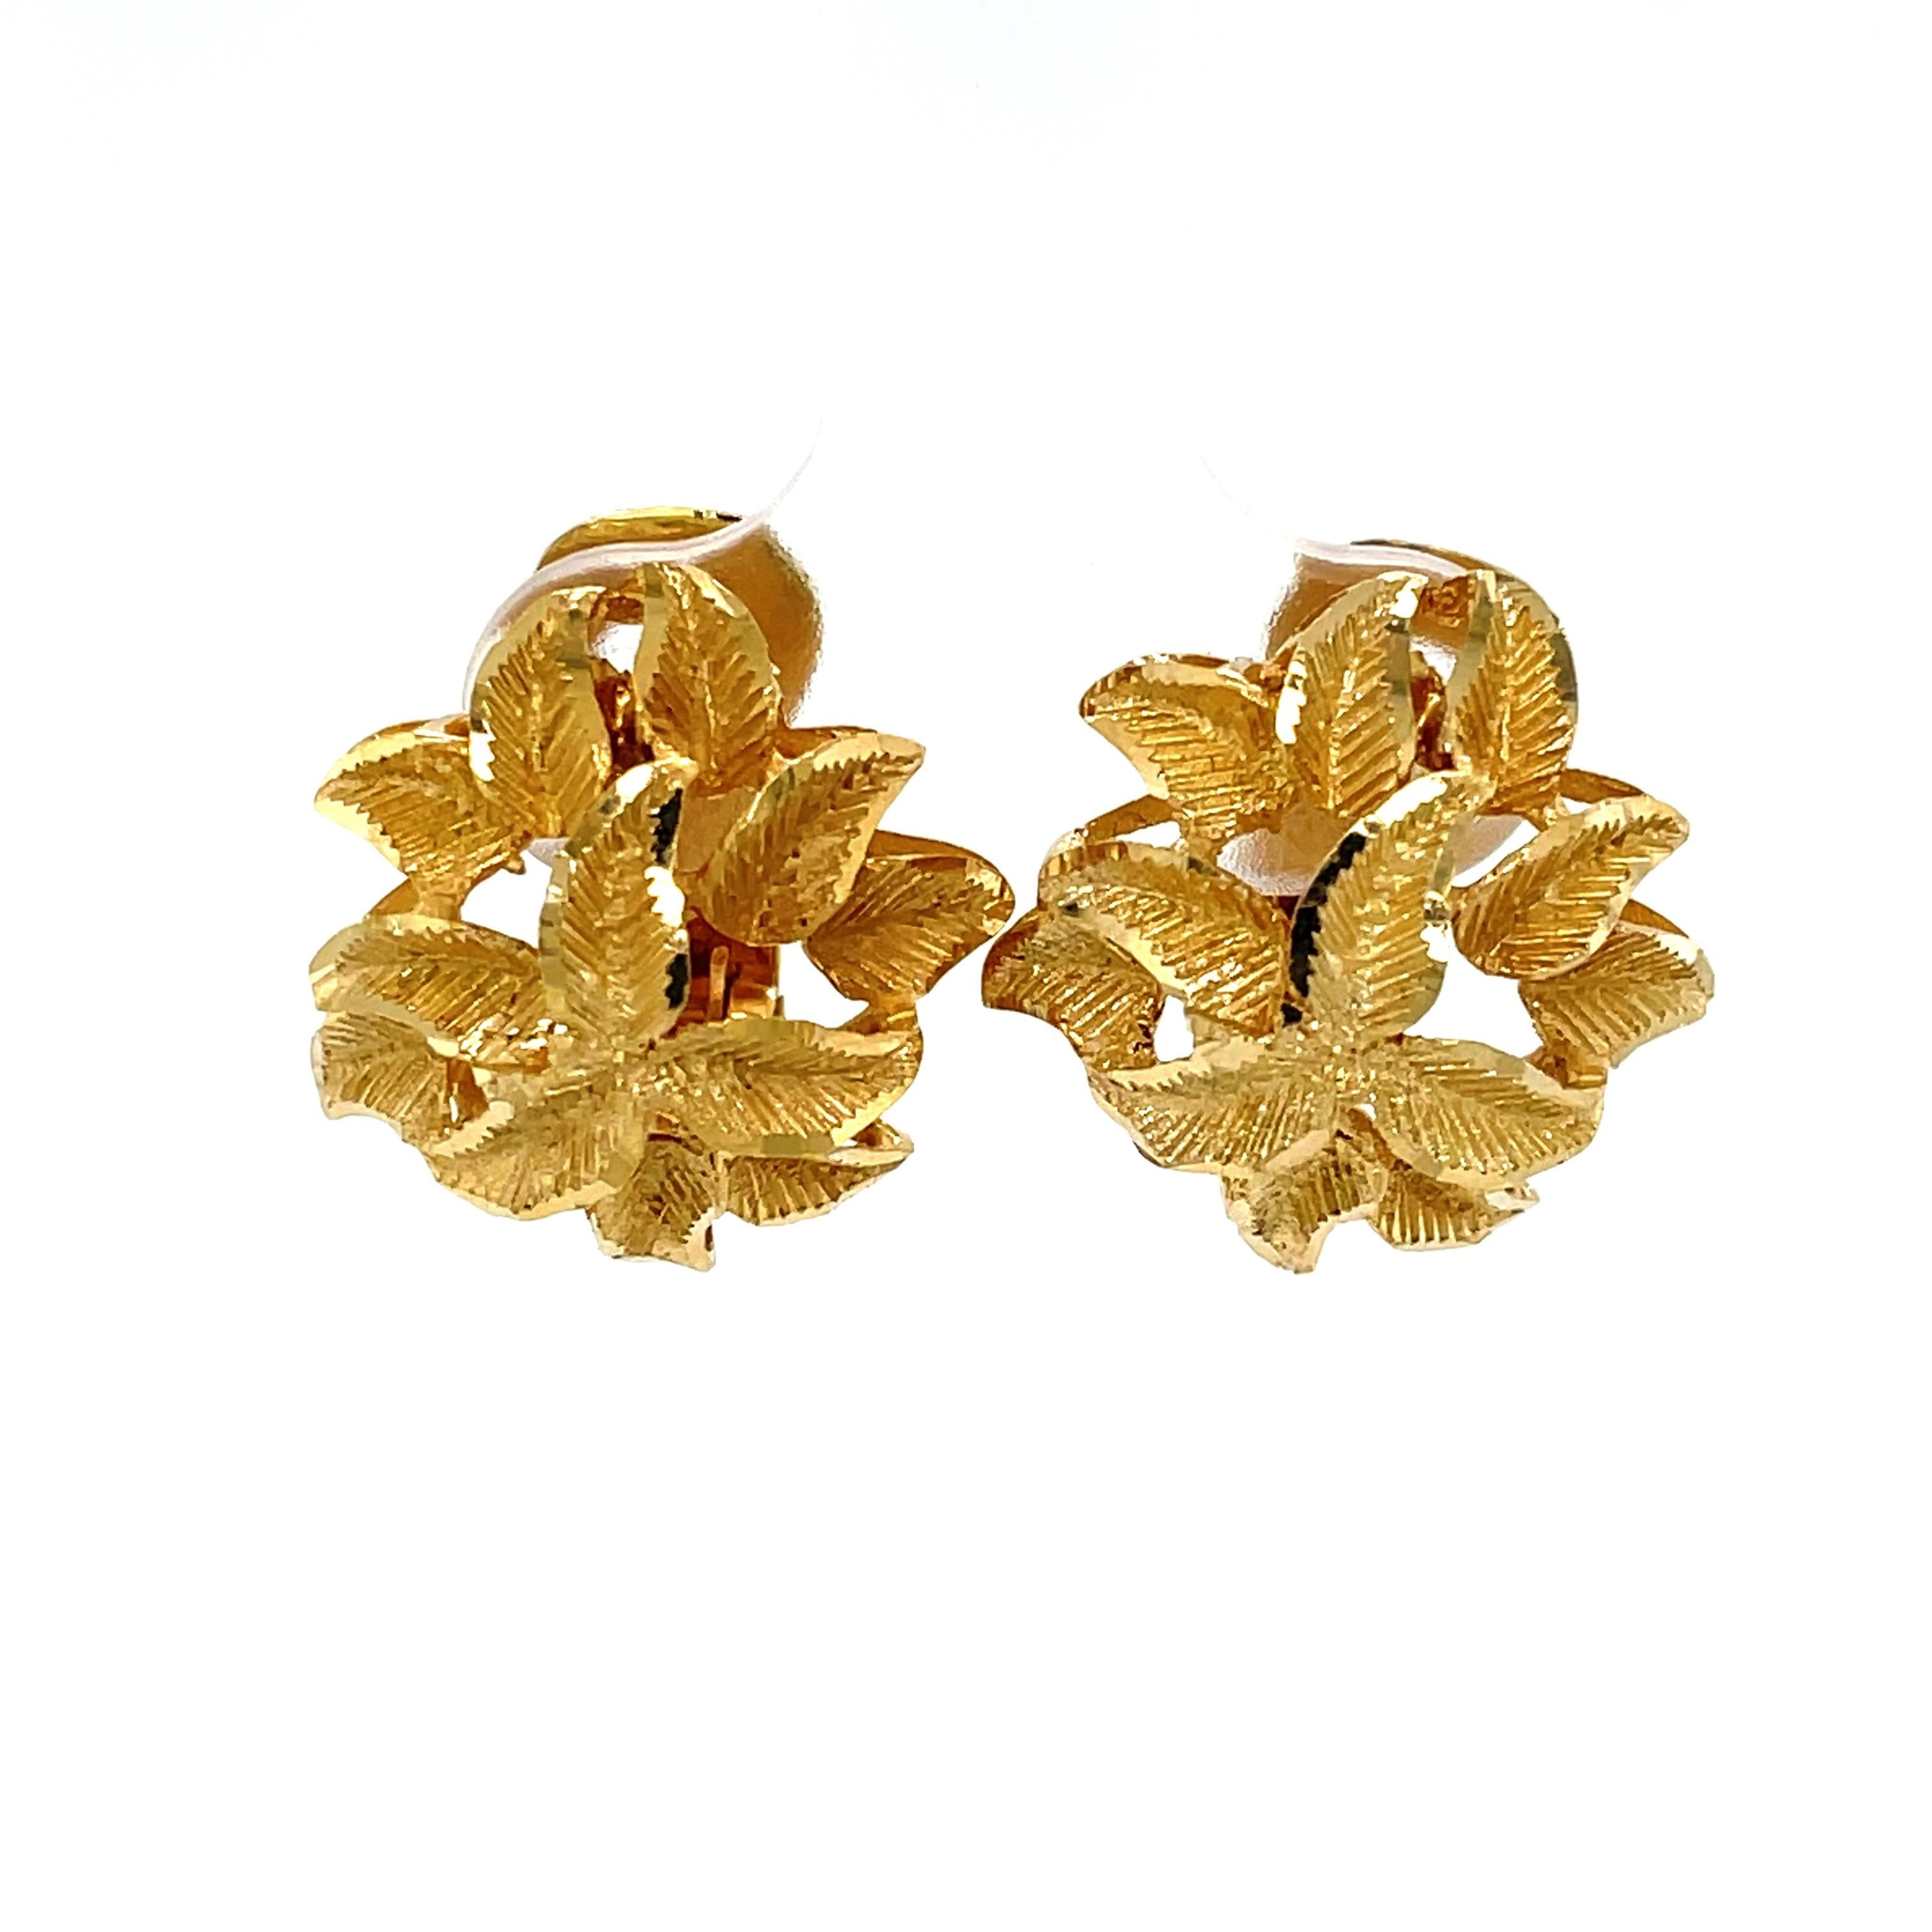 Dieses schlichte Ohrringpaar aus 14 Karat Gelbgold ist genau das Richtige, um Ihren Look für den Beruf oder einen besonderen Anlass aufzupeppen. Das von Blumen inspirierte Design wird durch die mattierte Goldoberfläche zum Leben erweckt und verleiht